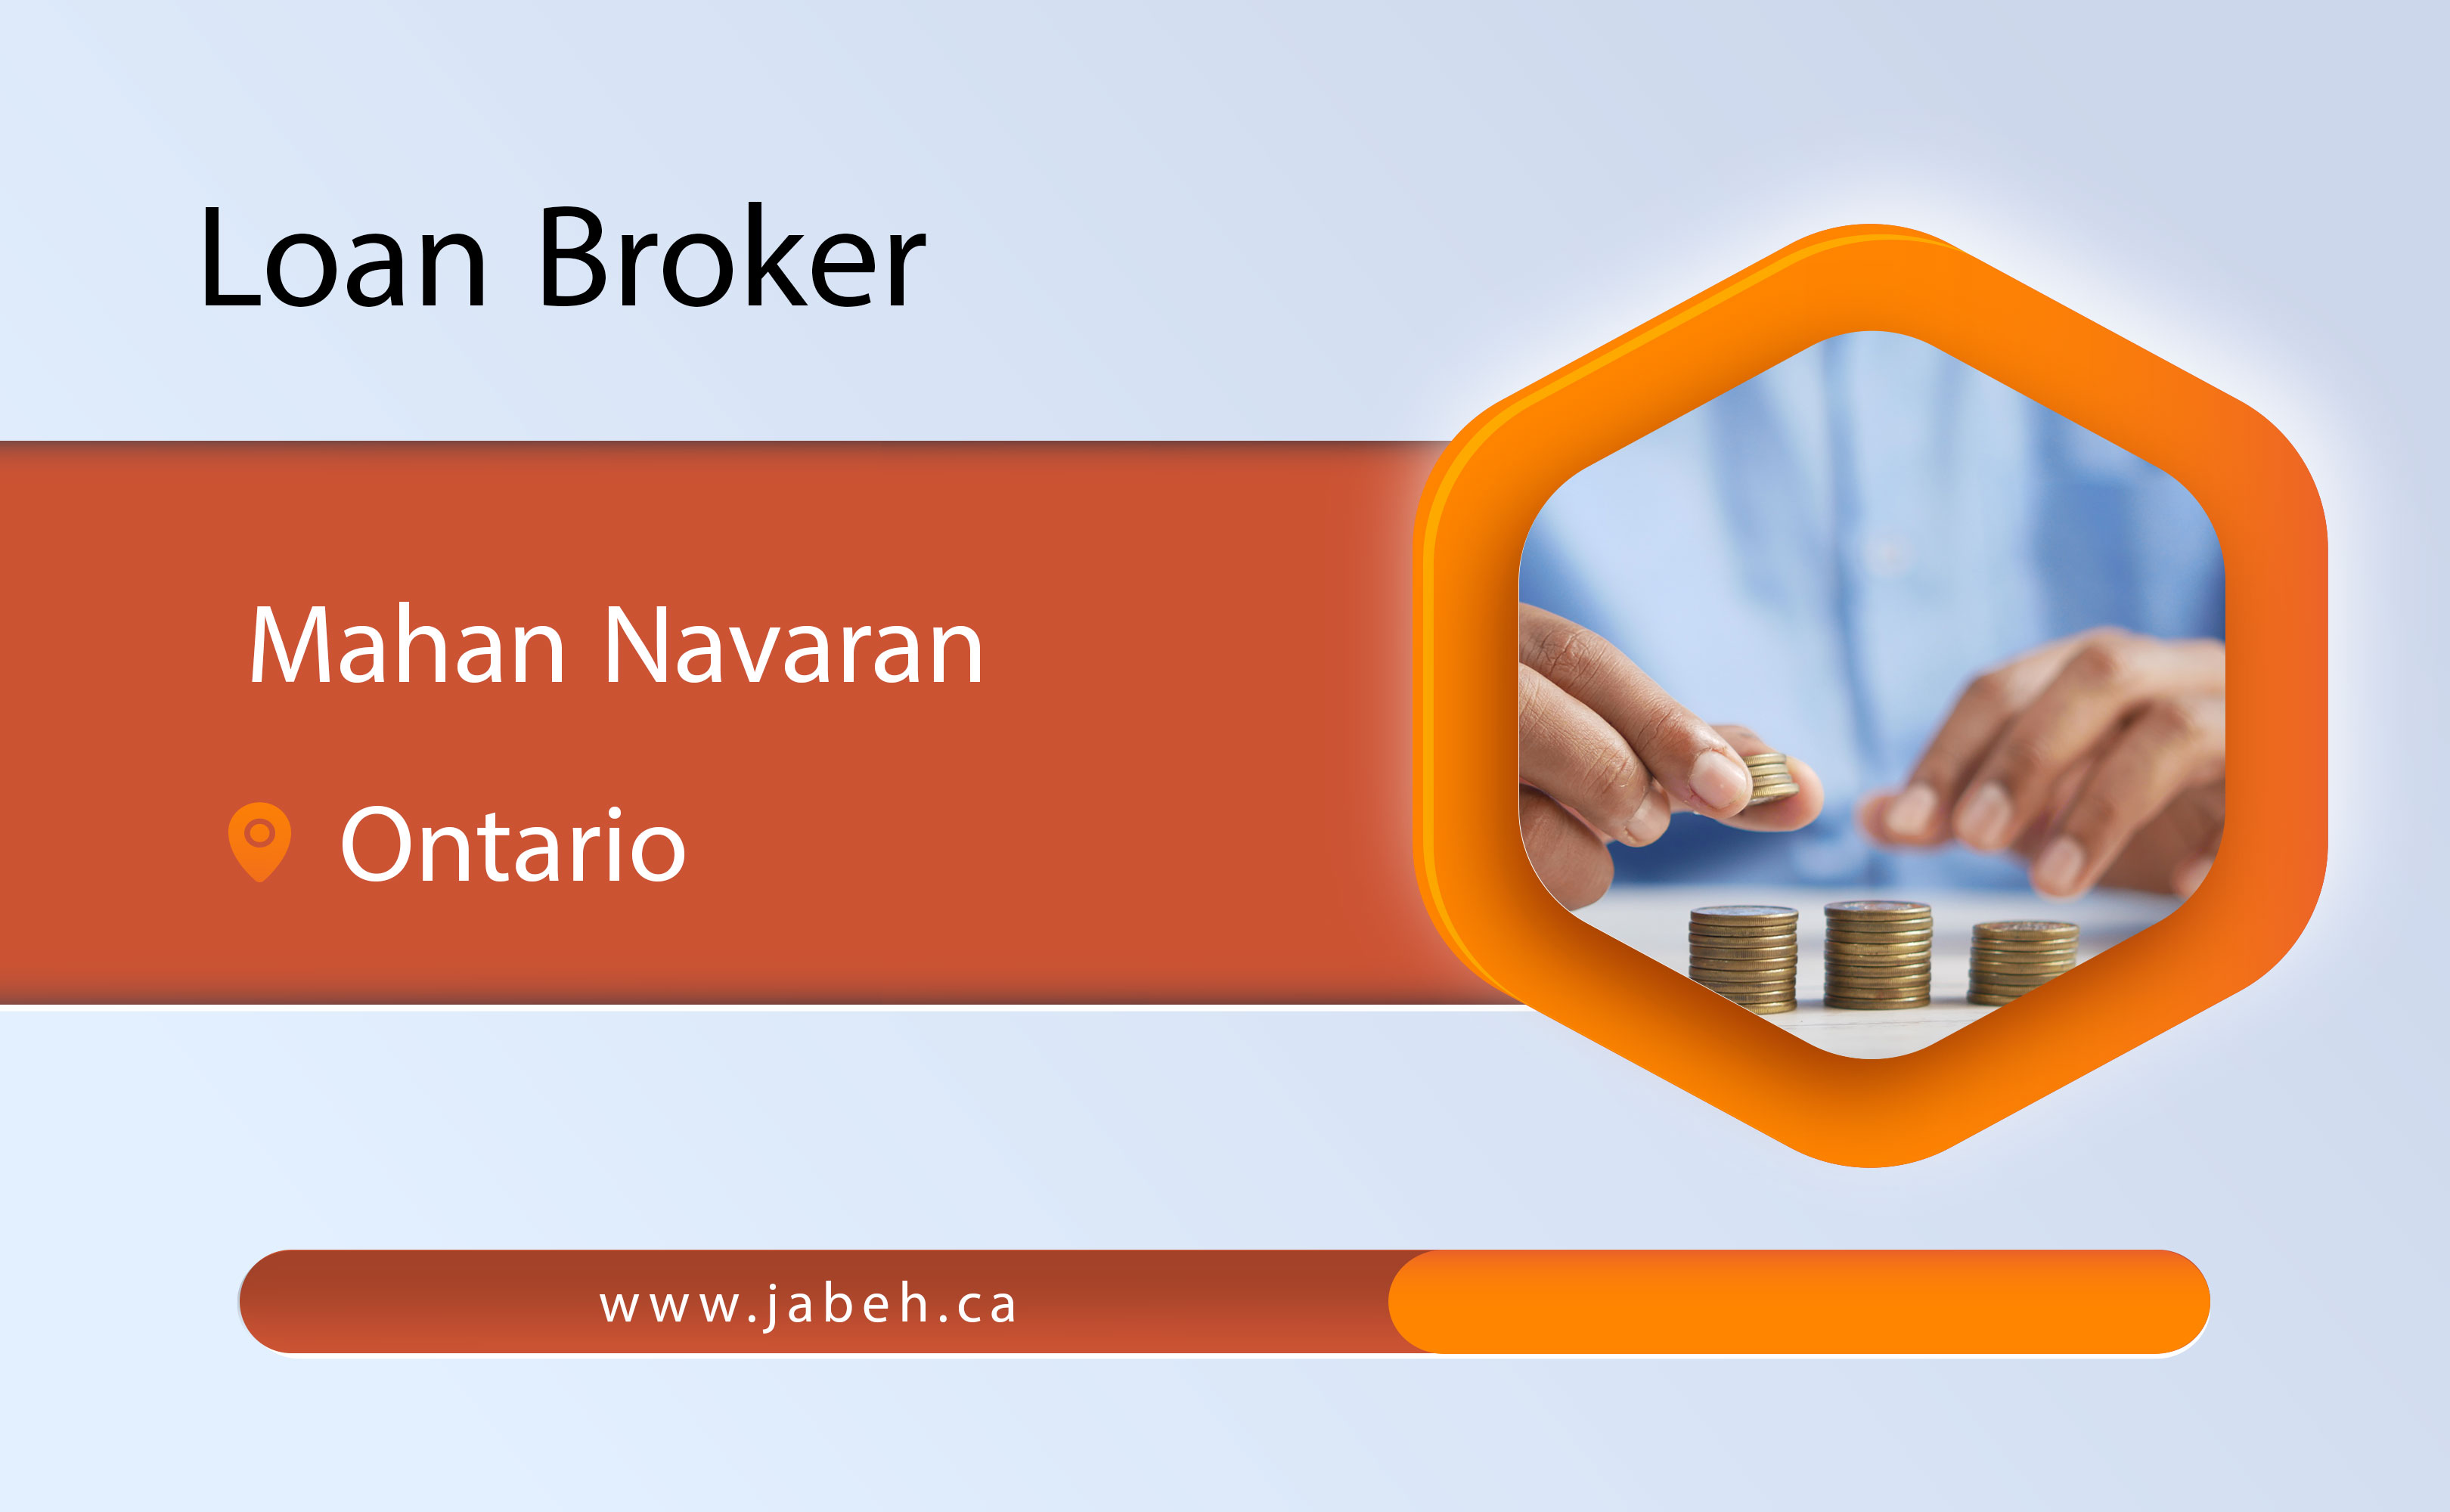 Iranian loan broker Mahan Navaran in Ontario